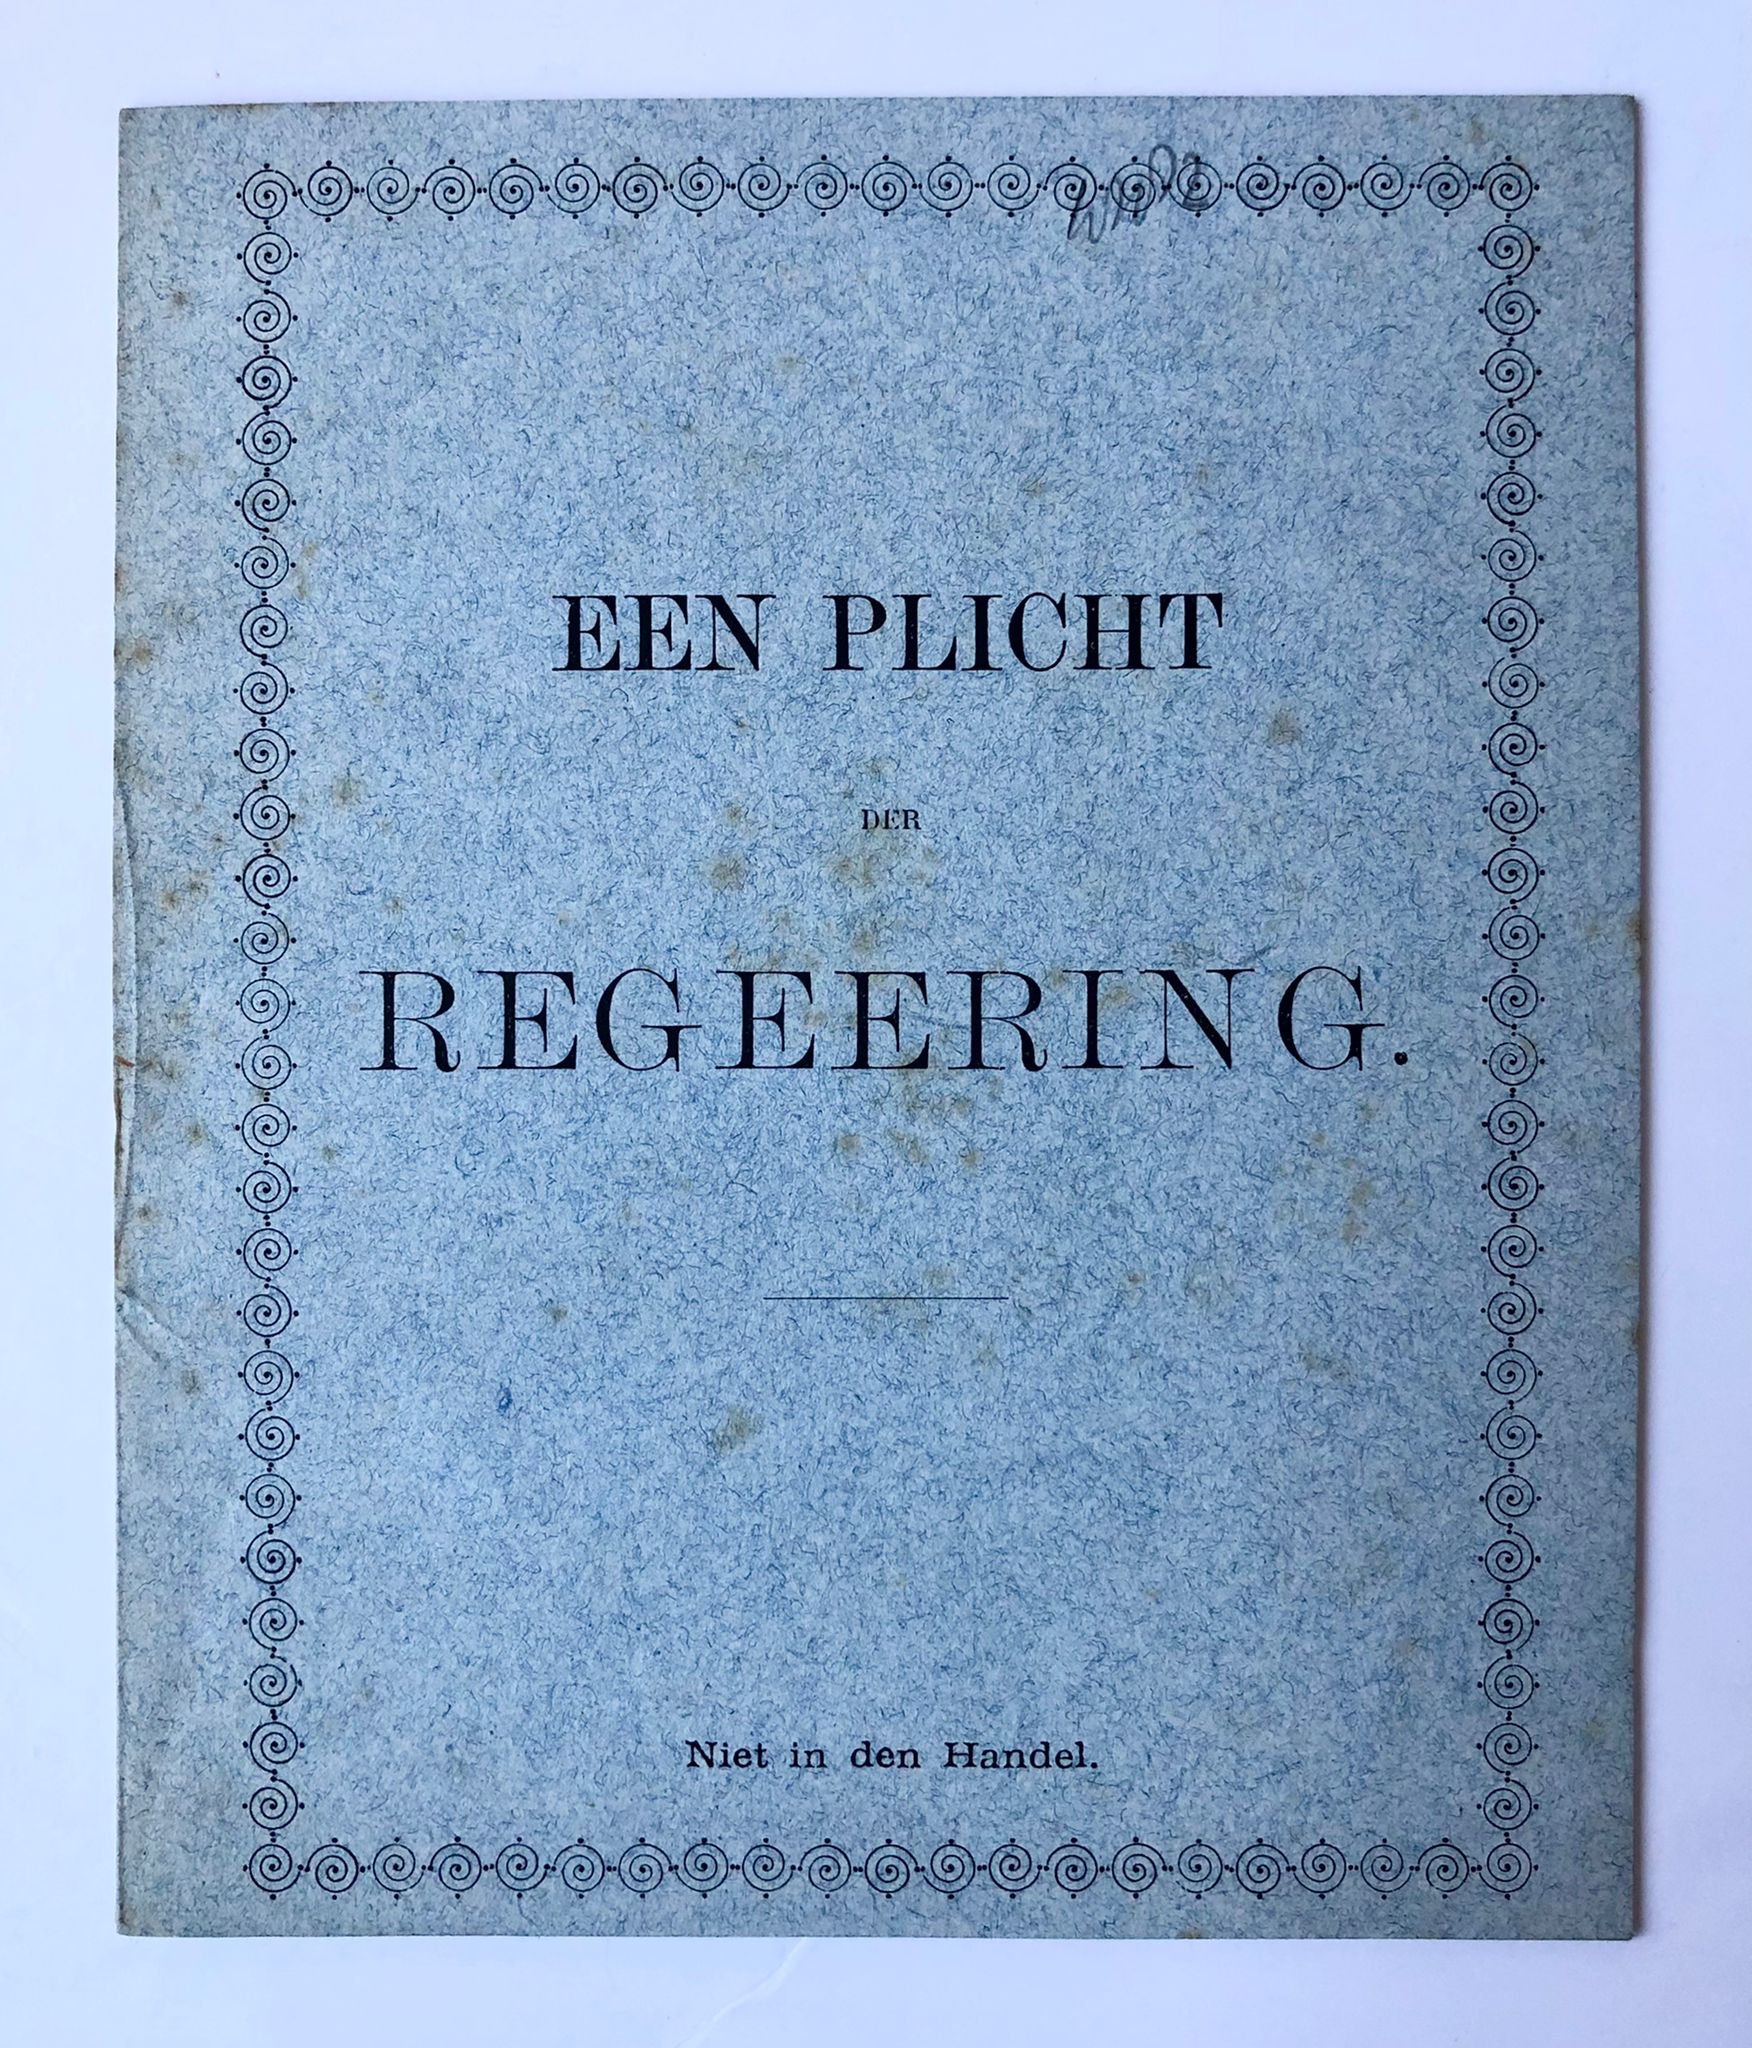 [Fashion, clothing, confectiemode, The Hague, 1882] Brochure 'Een plicht der regeering'. ,'s-Gravenhage, oktober 1882, signed: J. Cahen, Spuistraat 43, Den Haag.